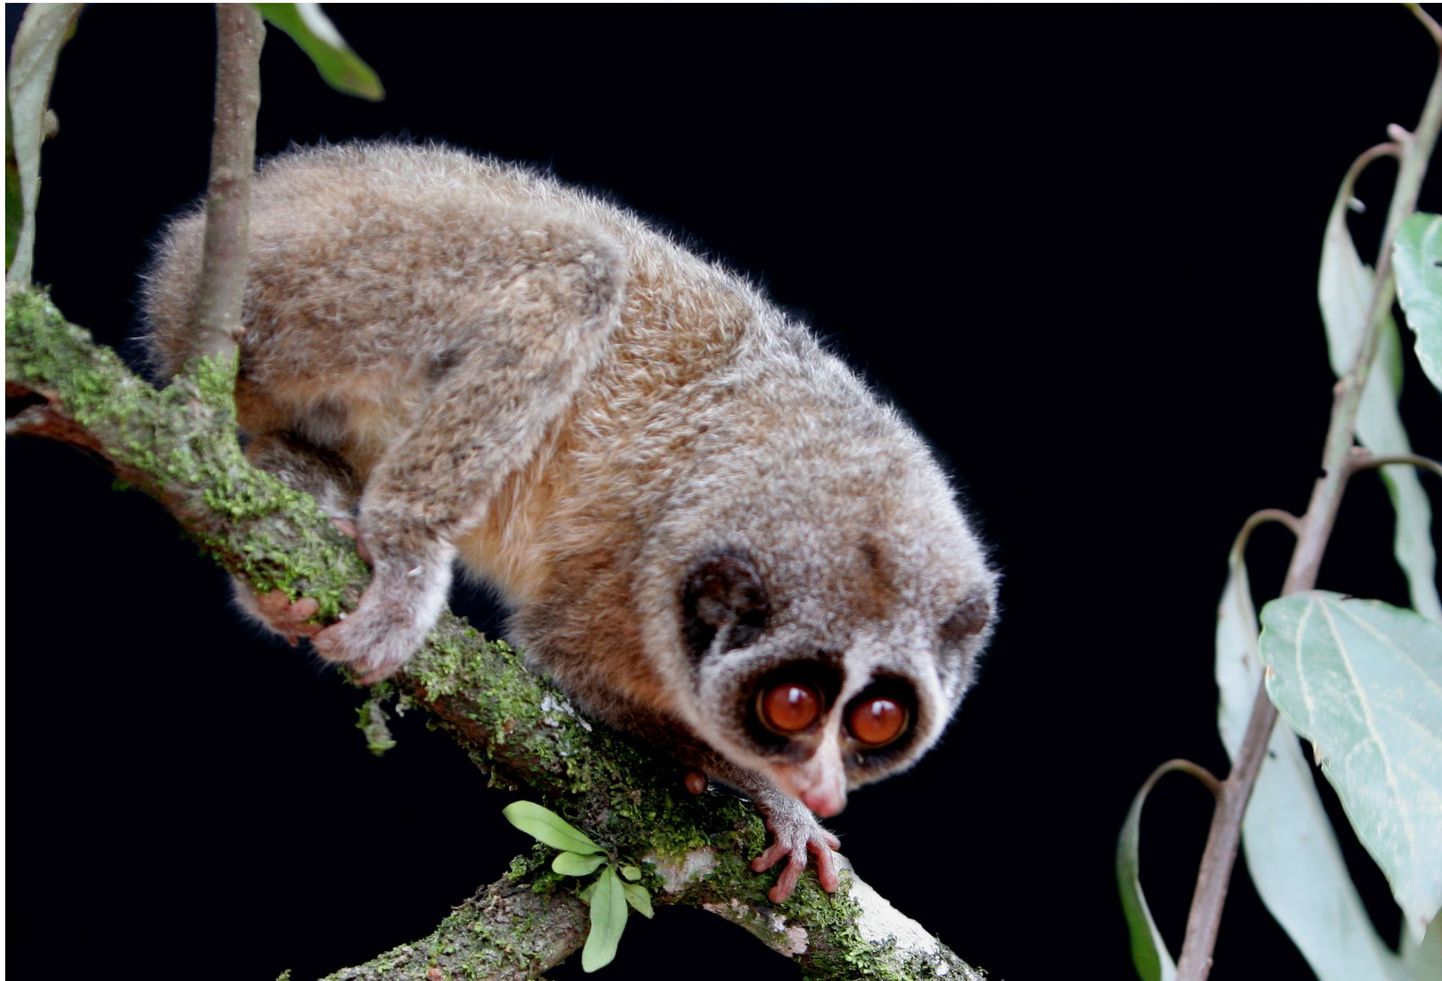 Глазастый примат тонкий лори достигает в длину 17 см. Иллюстративное фото.